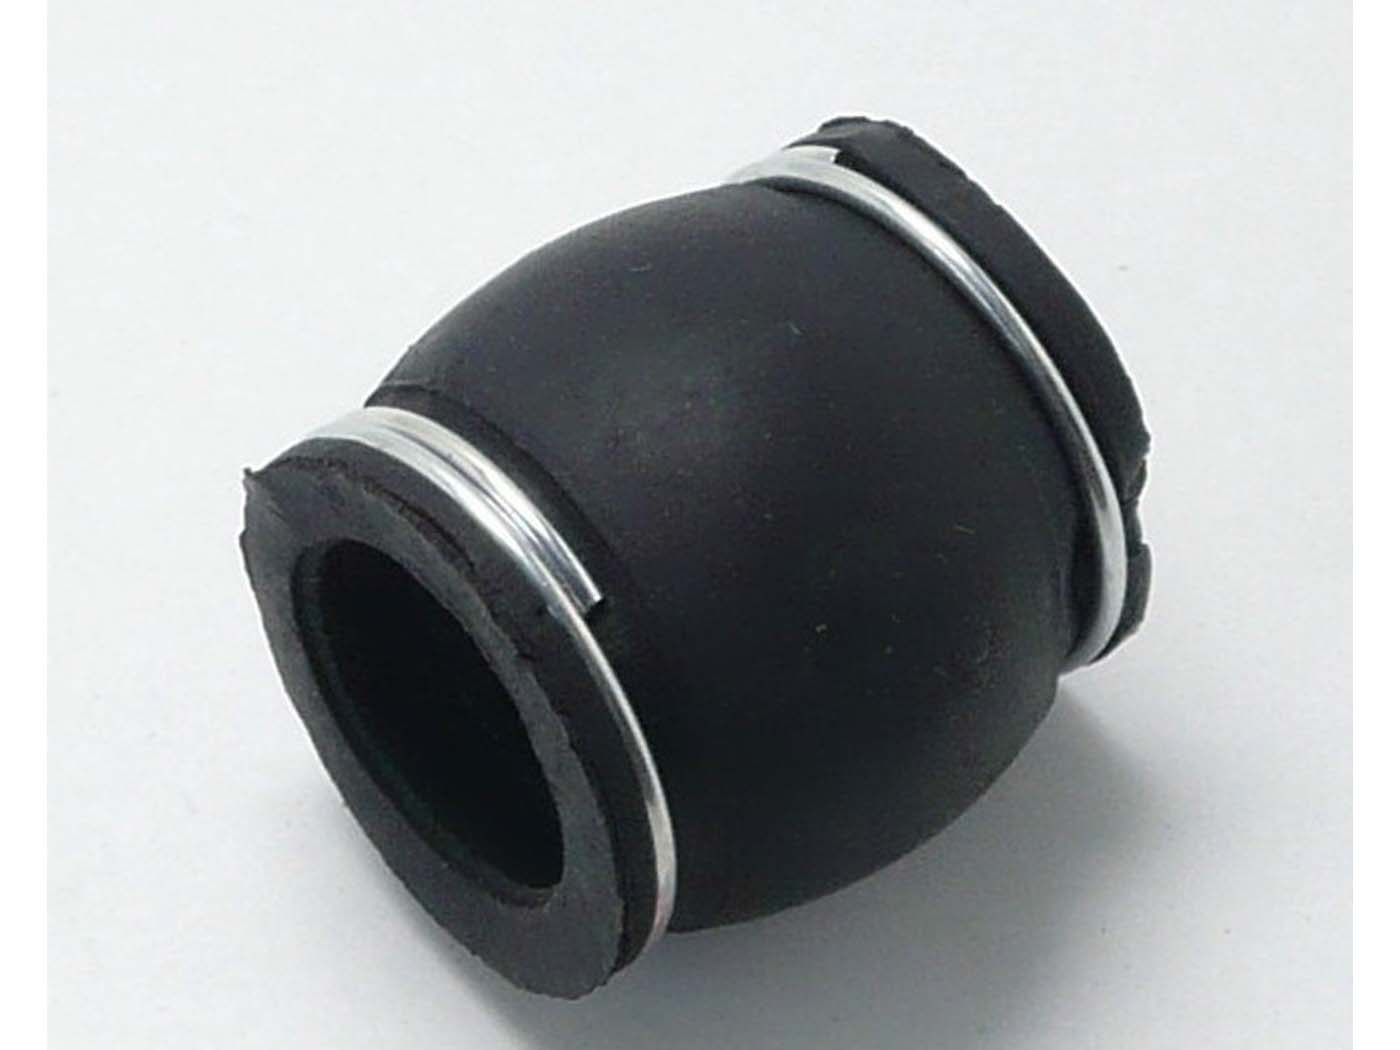 Exhaust Rubber 20-30mm For Zündapp, Kreidler, Hercules, Puch, Simson, KTM